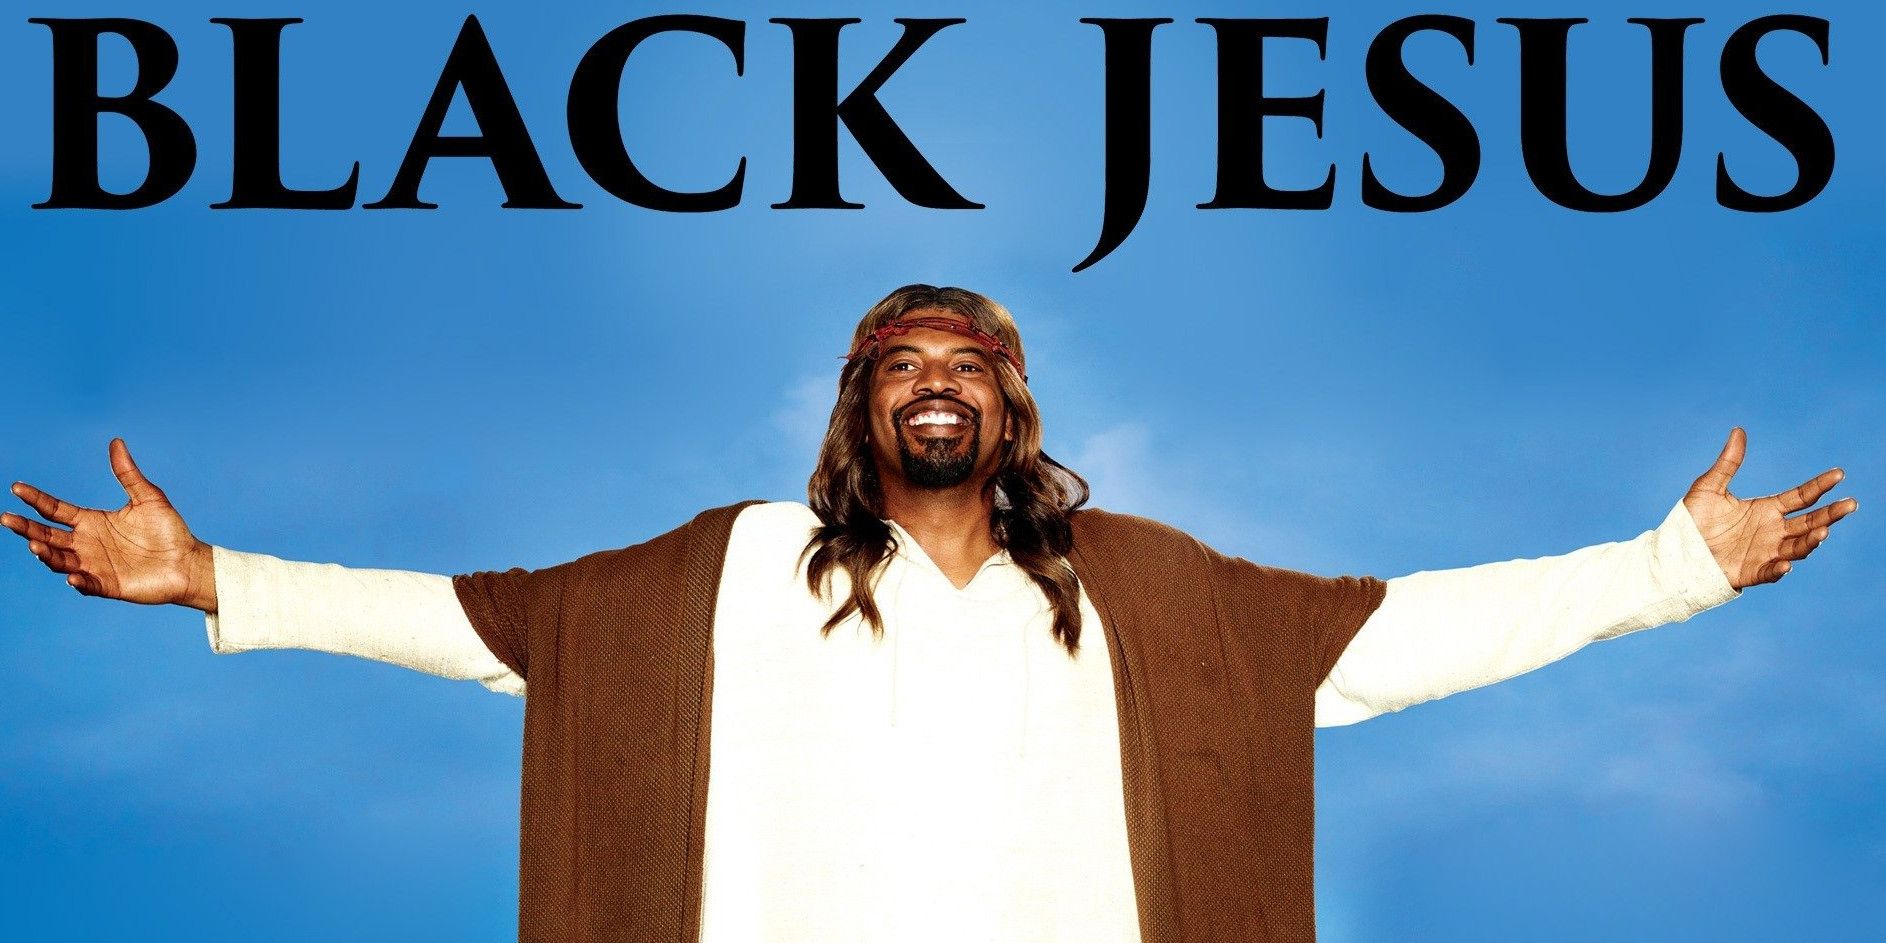 Slink Johnson as Black Jesus.